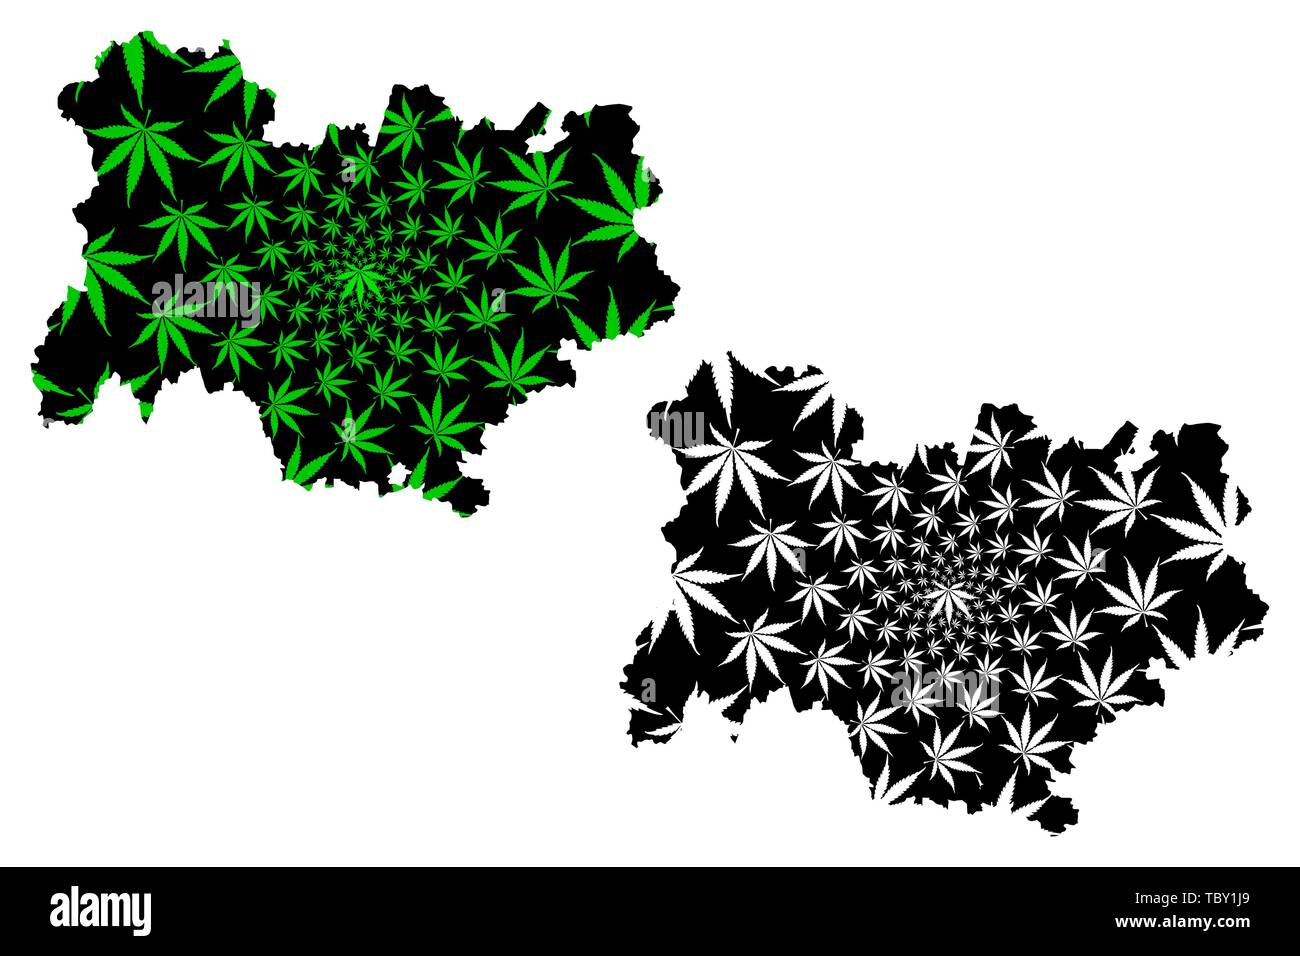 Auvergne-Rhone-Alpes (Frankreich, administrative Region) Karte ist Cannabis blatt grün und schwarz, Auvergne-Rhone-Alpes Karte aus Marihuana (marihu konzipiert Stock Vektor